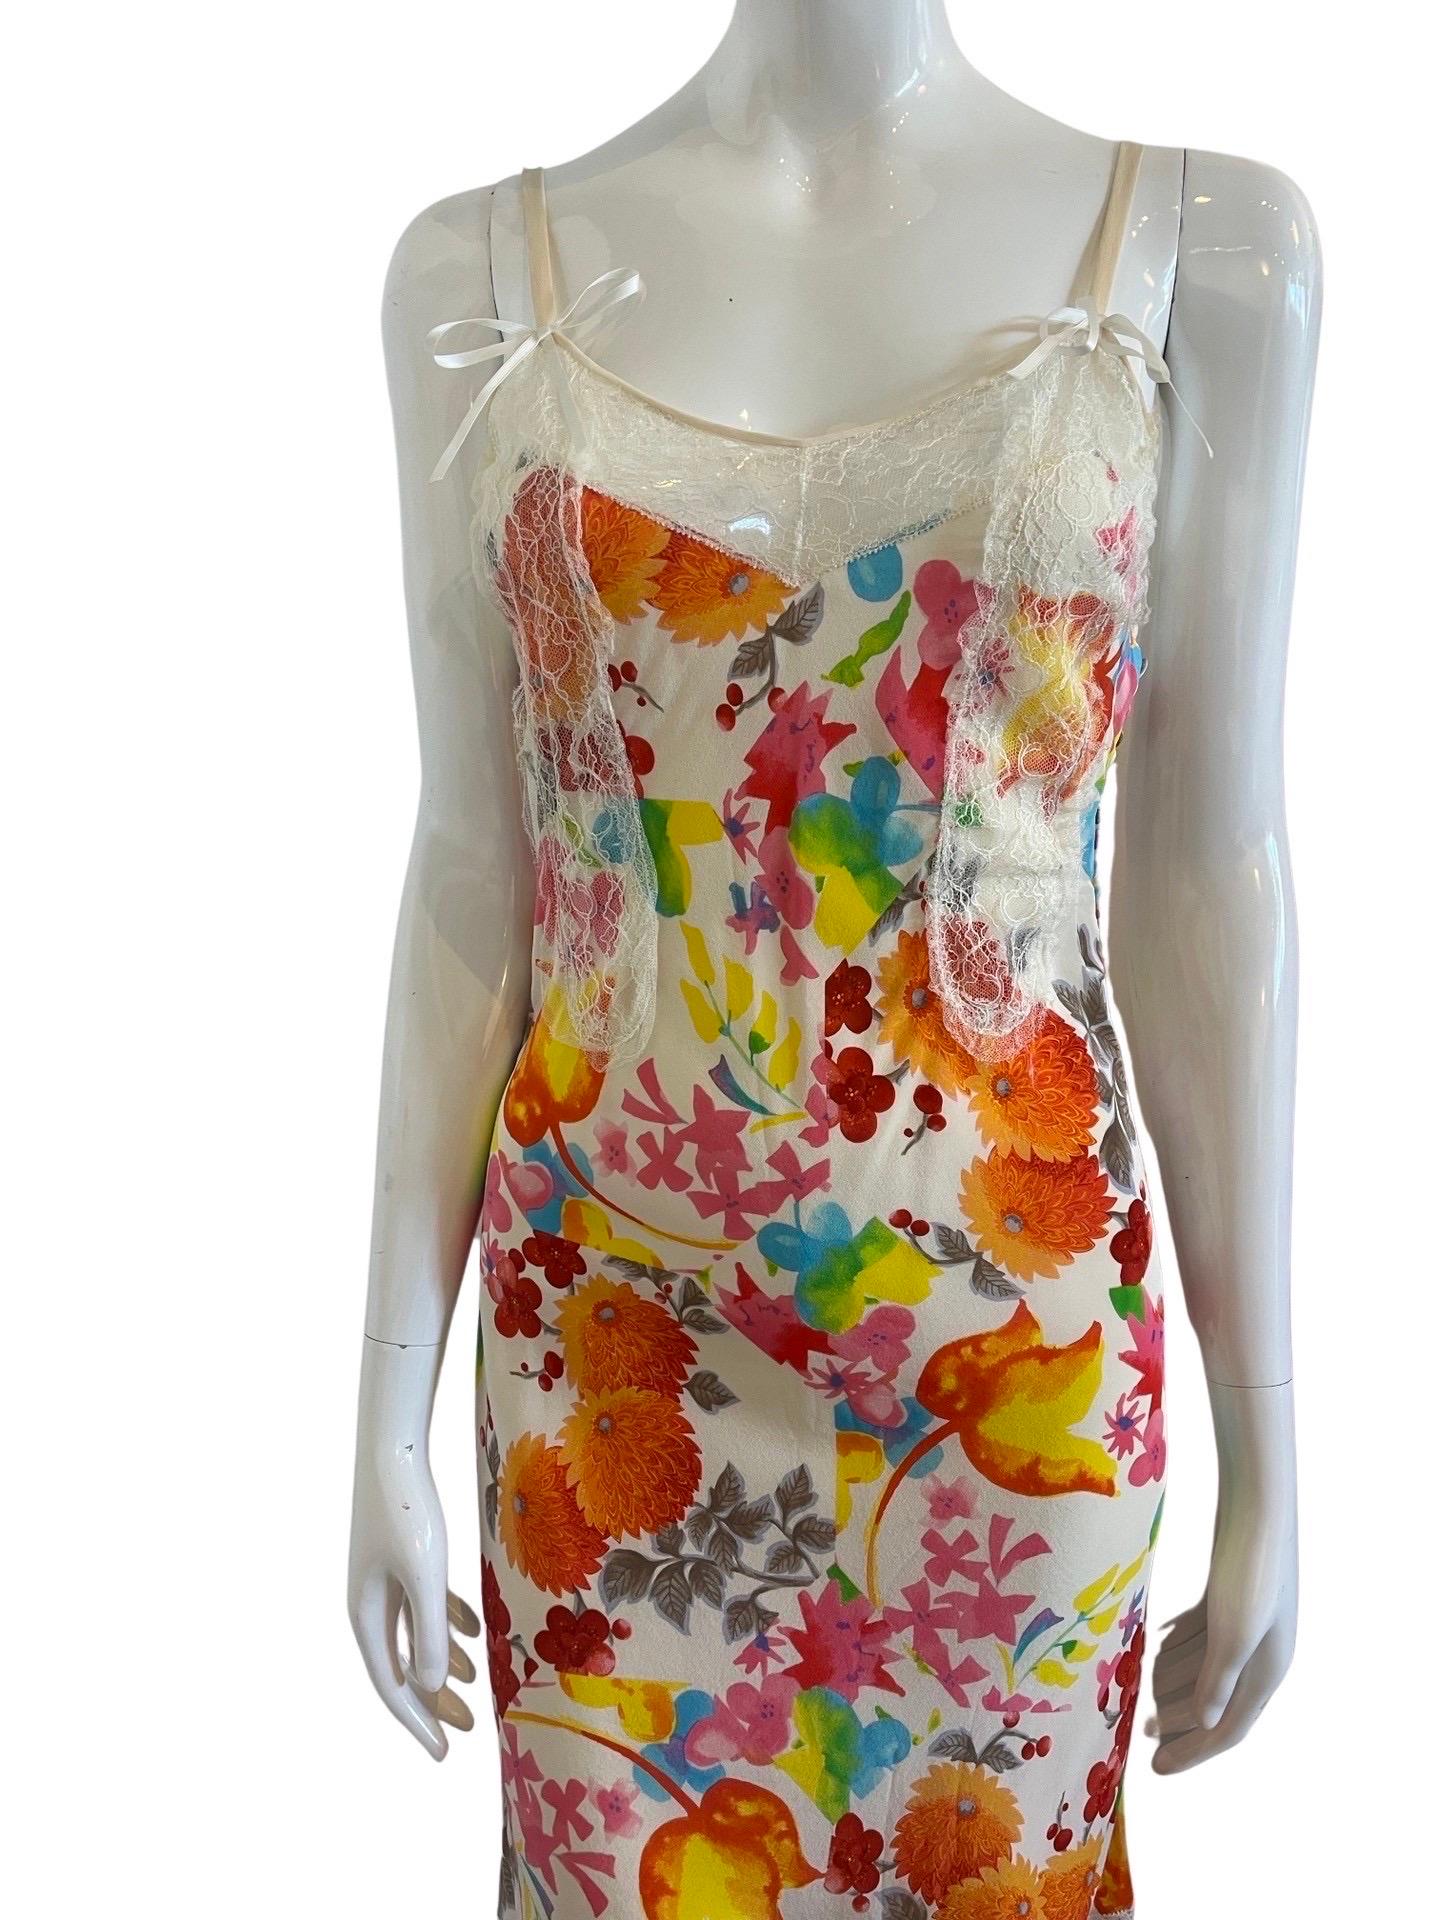 Atemberaubendes Kleid von Christian Dior by John Galliano aus einer Kollektion der frühen 00er Jahre.  Dies ist eine Mitte-Länge Slip Kleid in Seide mit Spitze Details in Seide gedruckt Säure helle Farbe Chrysantheme und Blumendruck getan.  Dieses